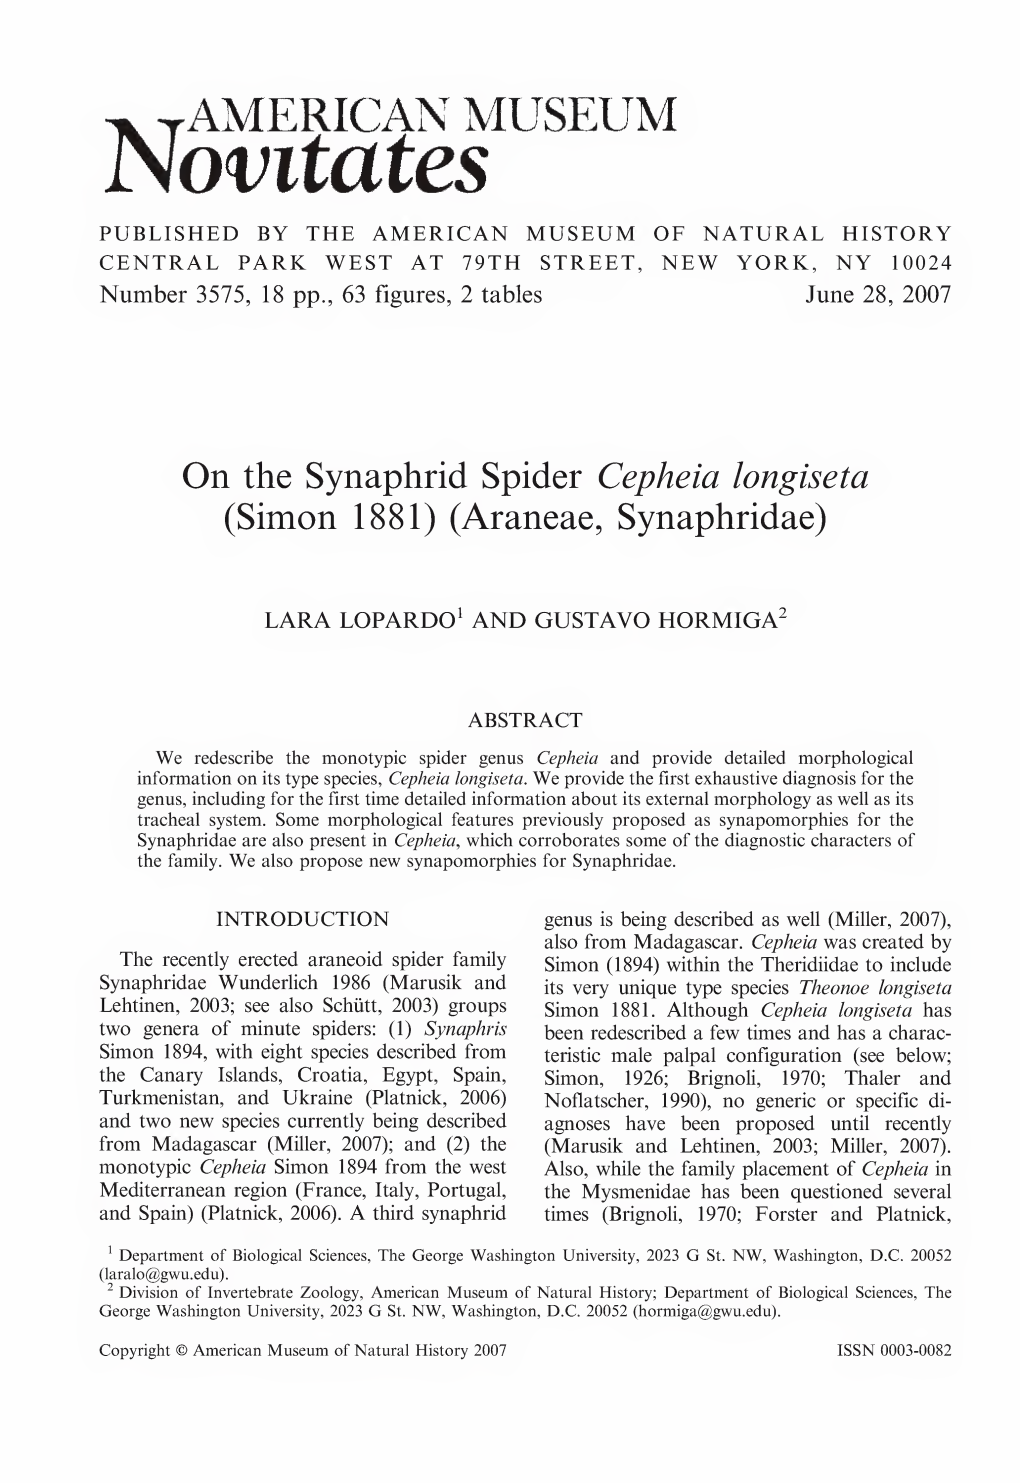 On the Synaphrid Spider Cepheia Longiseta (Simon 1881) (Araneae, Synaphridae)